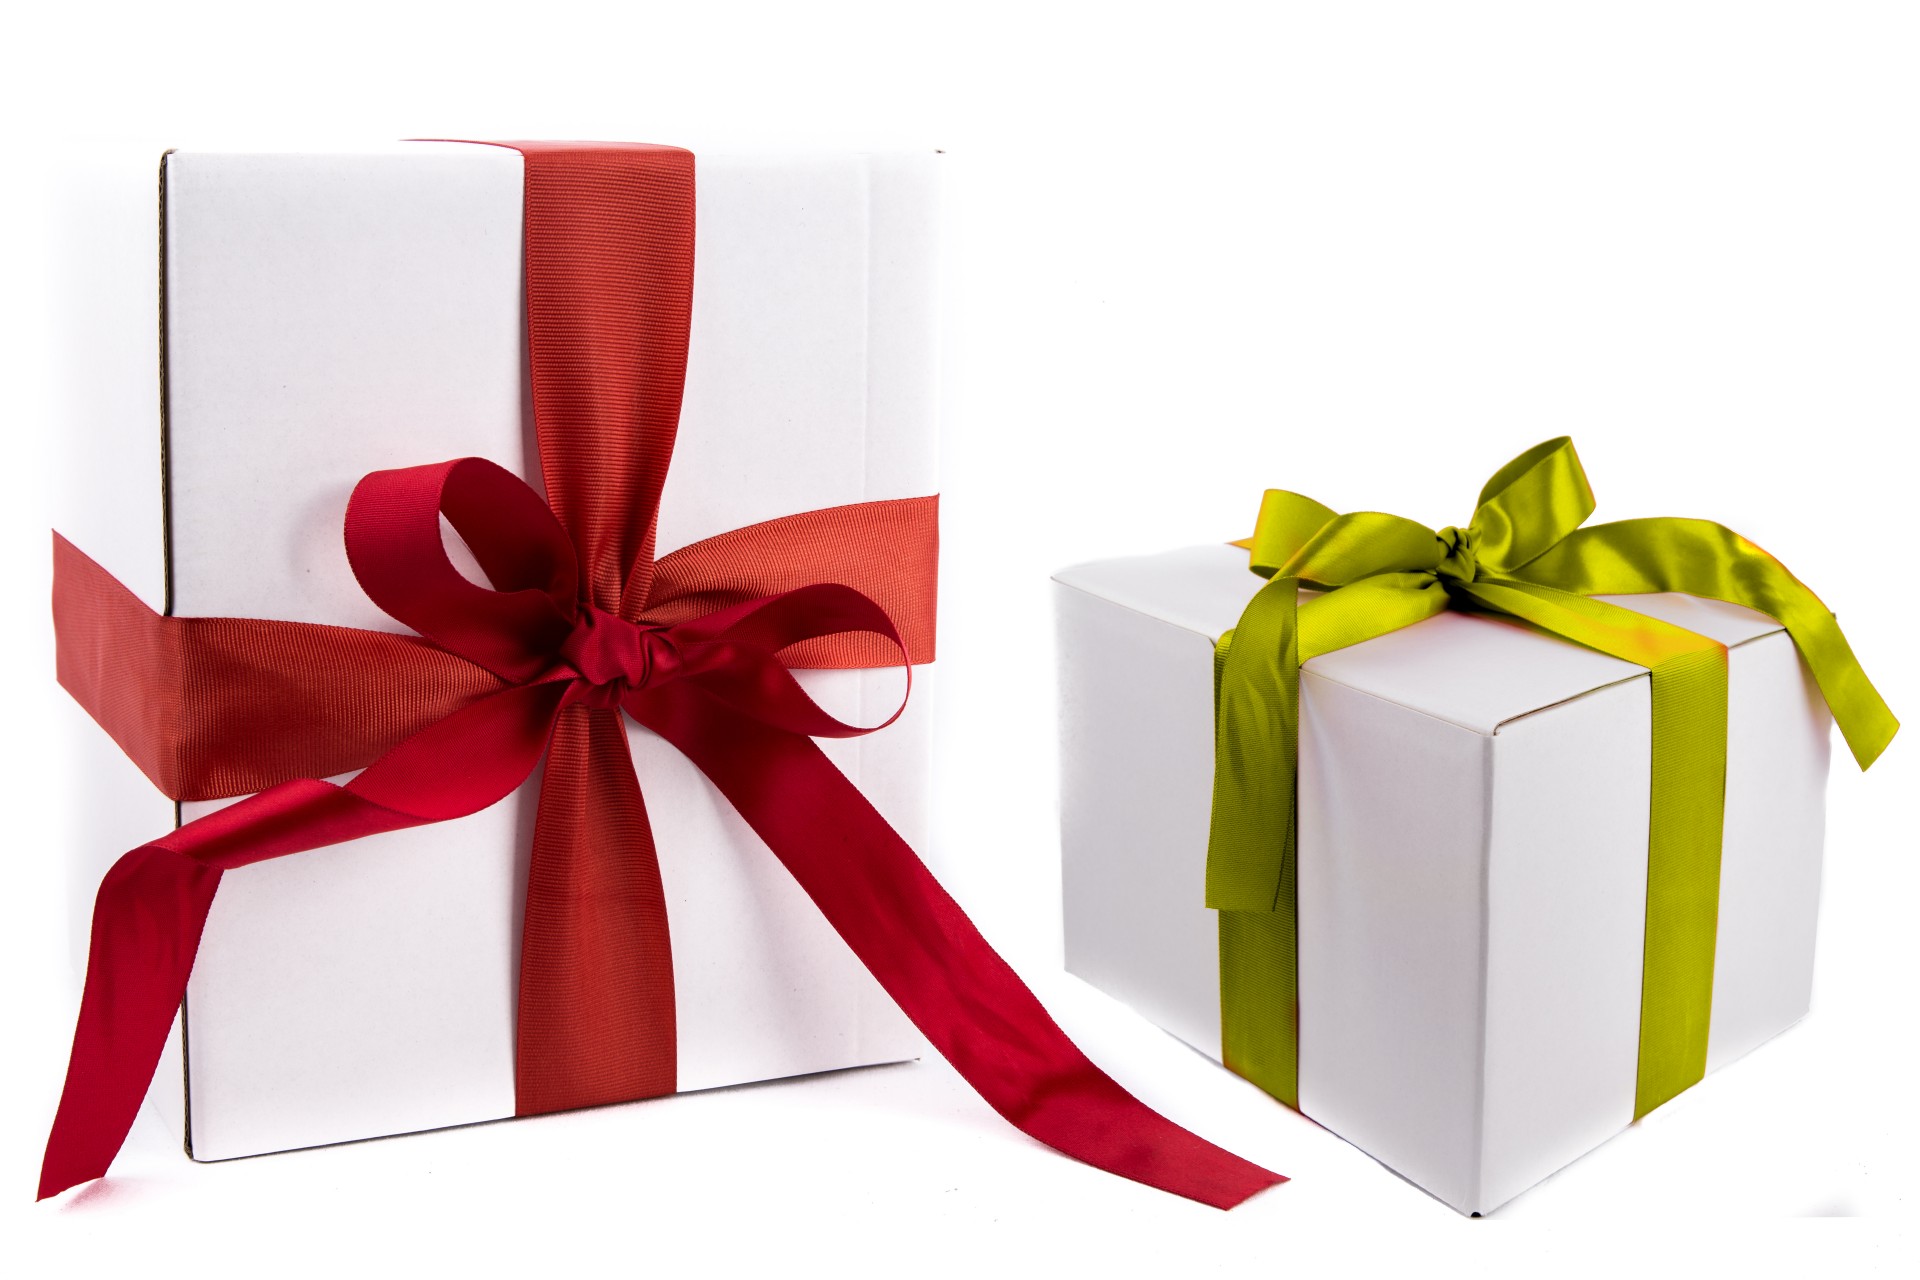 Сюрприз 2 5. Подарок. Подарочные коробки. Коробки с подарками на белом фоне. Белая подарочная коробка с красной лентой.